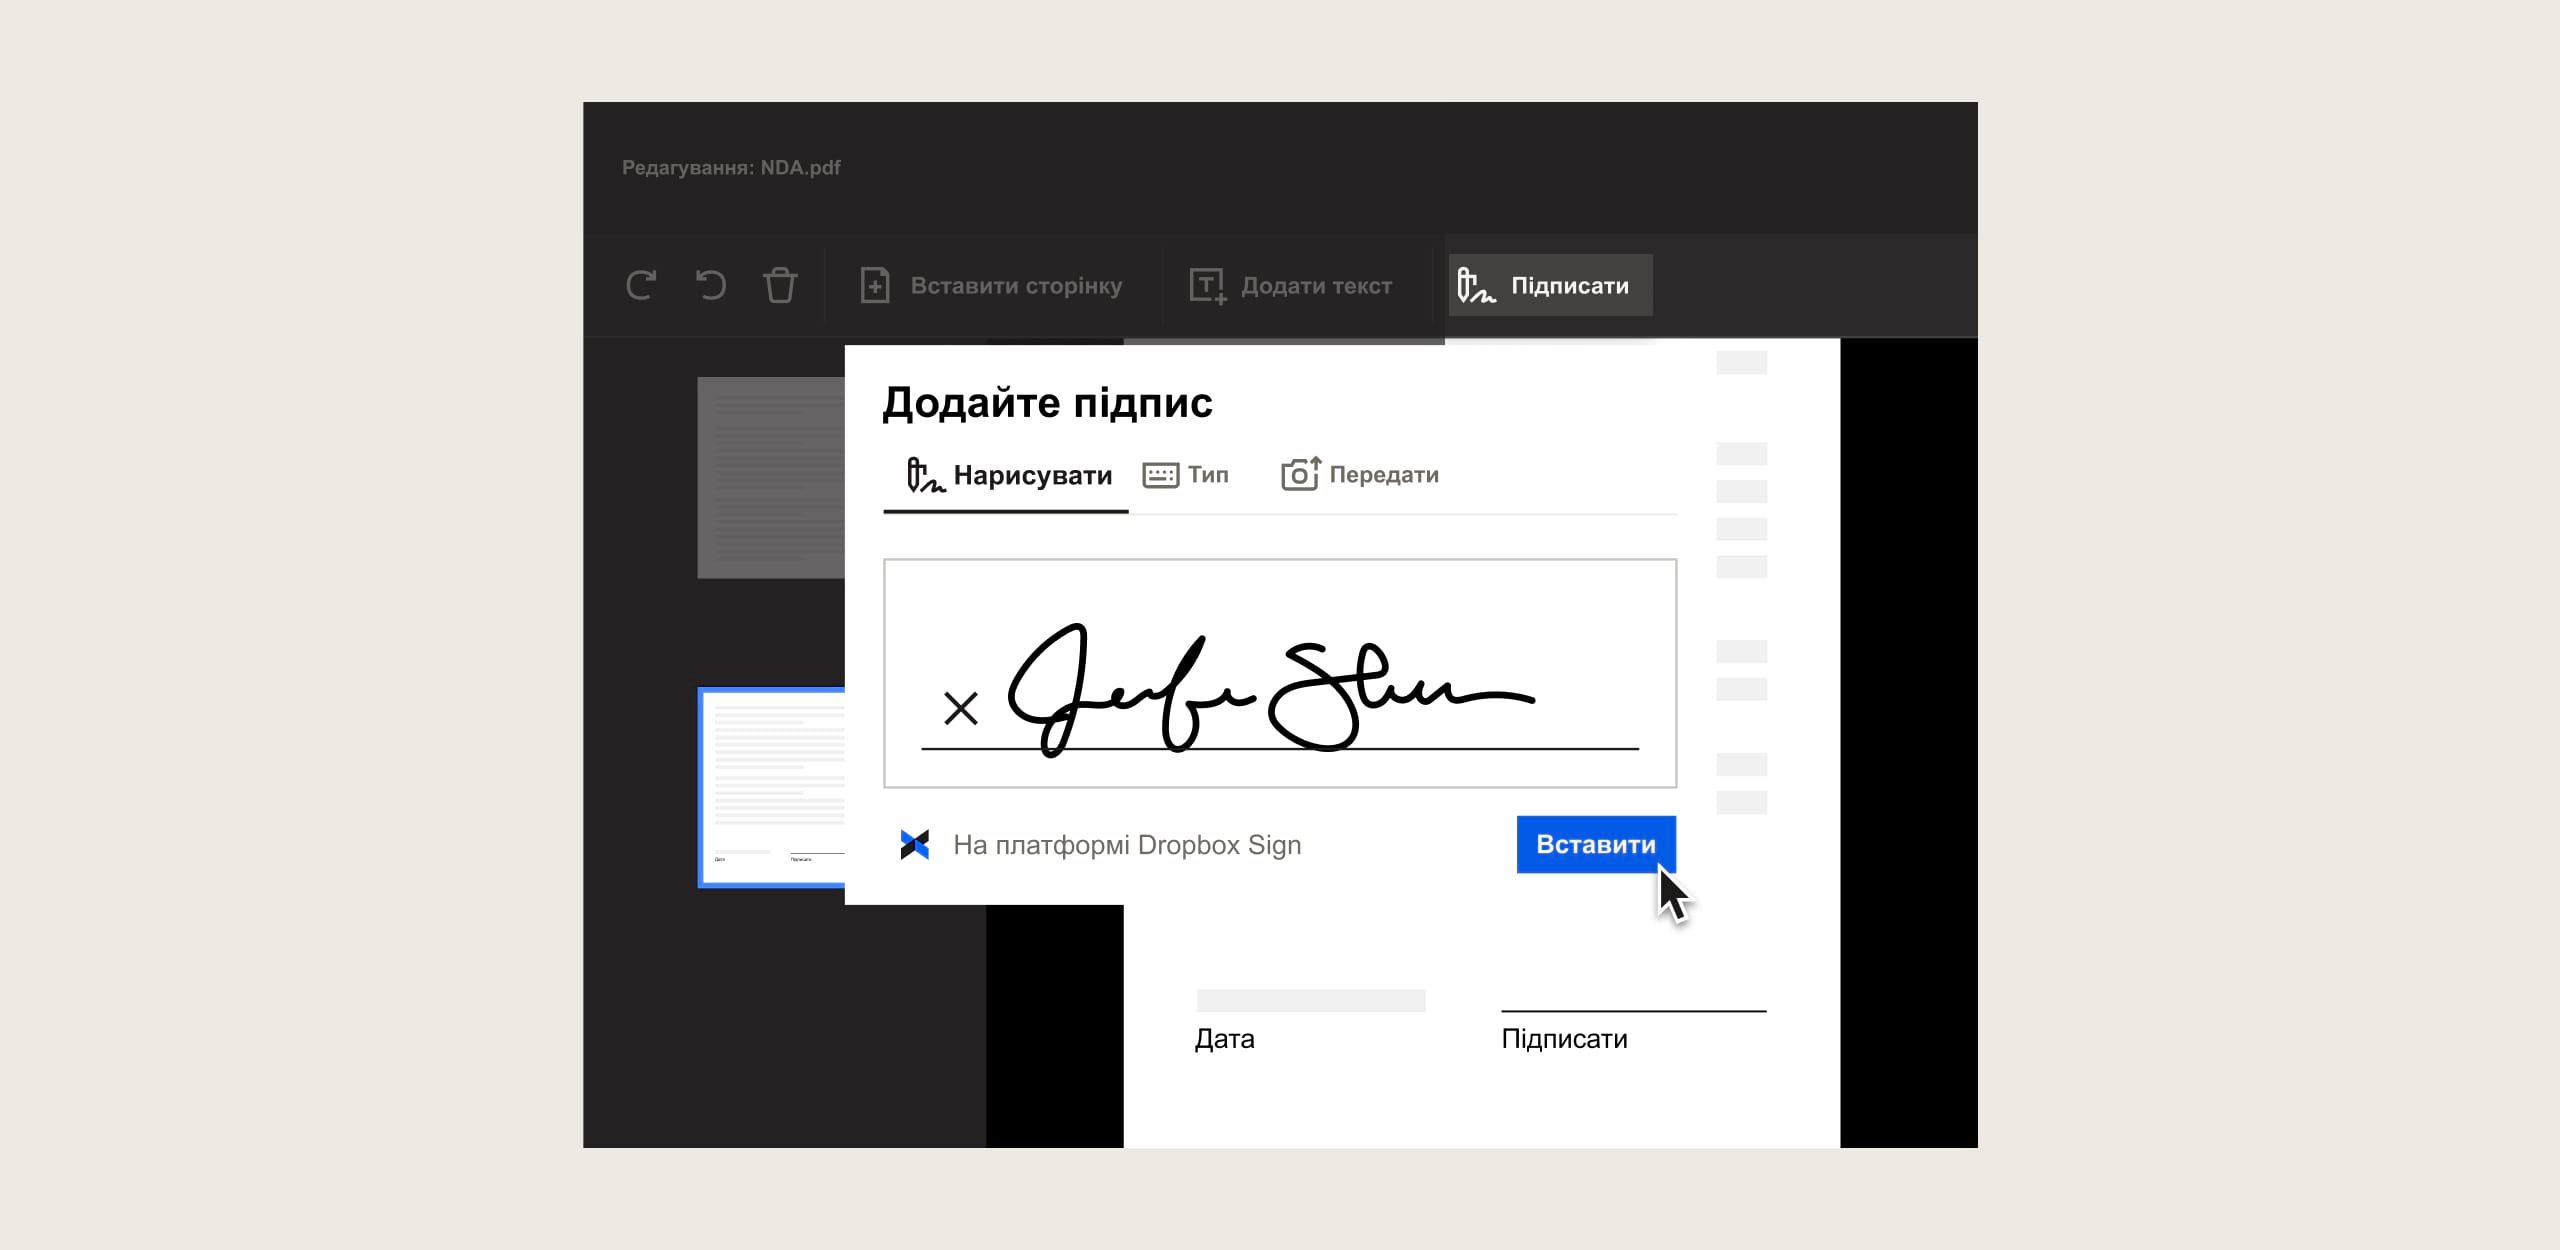 Людина вставляє підпис у документ за допомогою Dropbox Sign